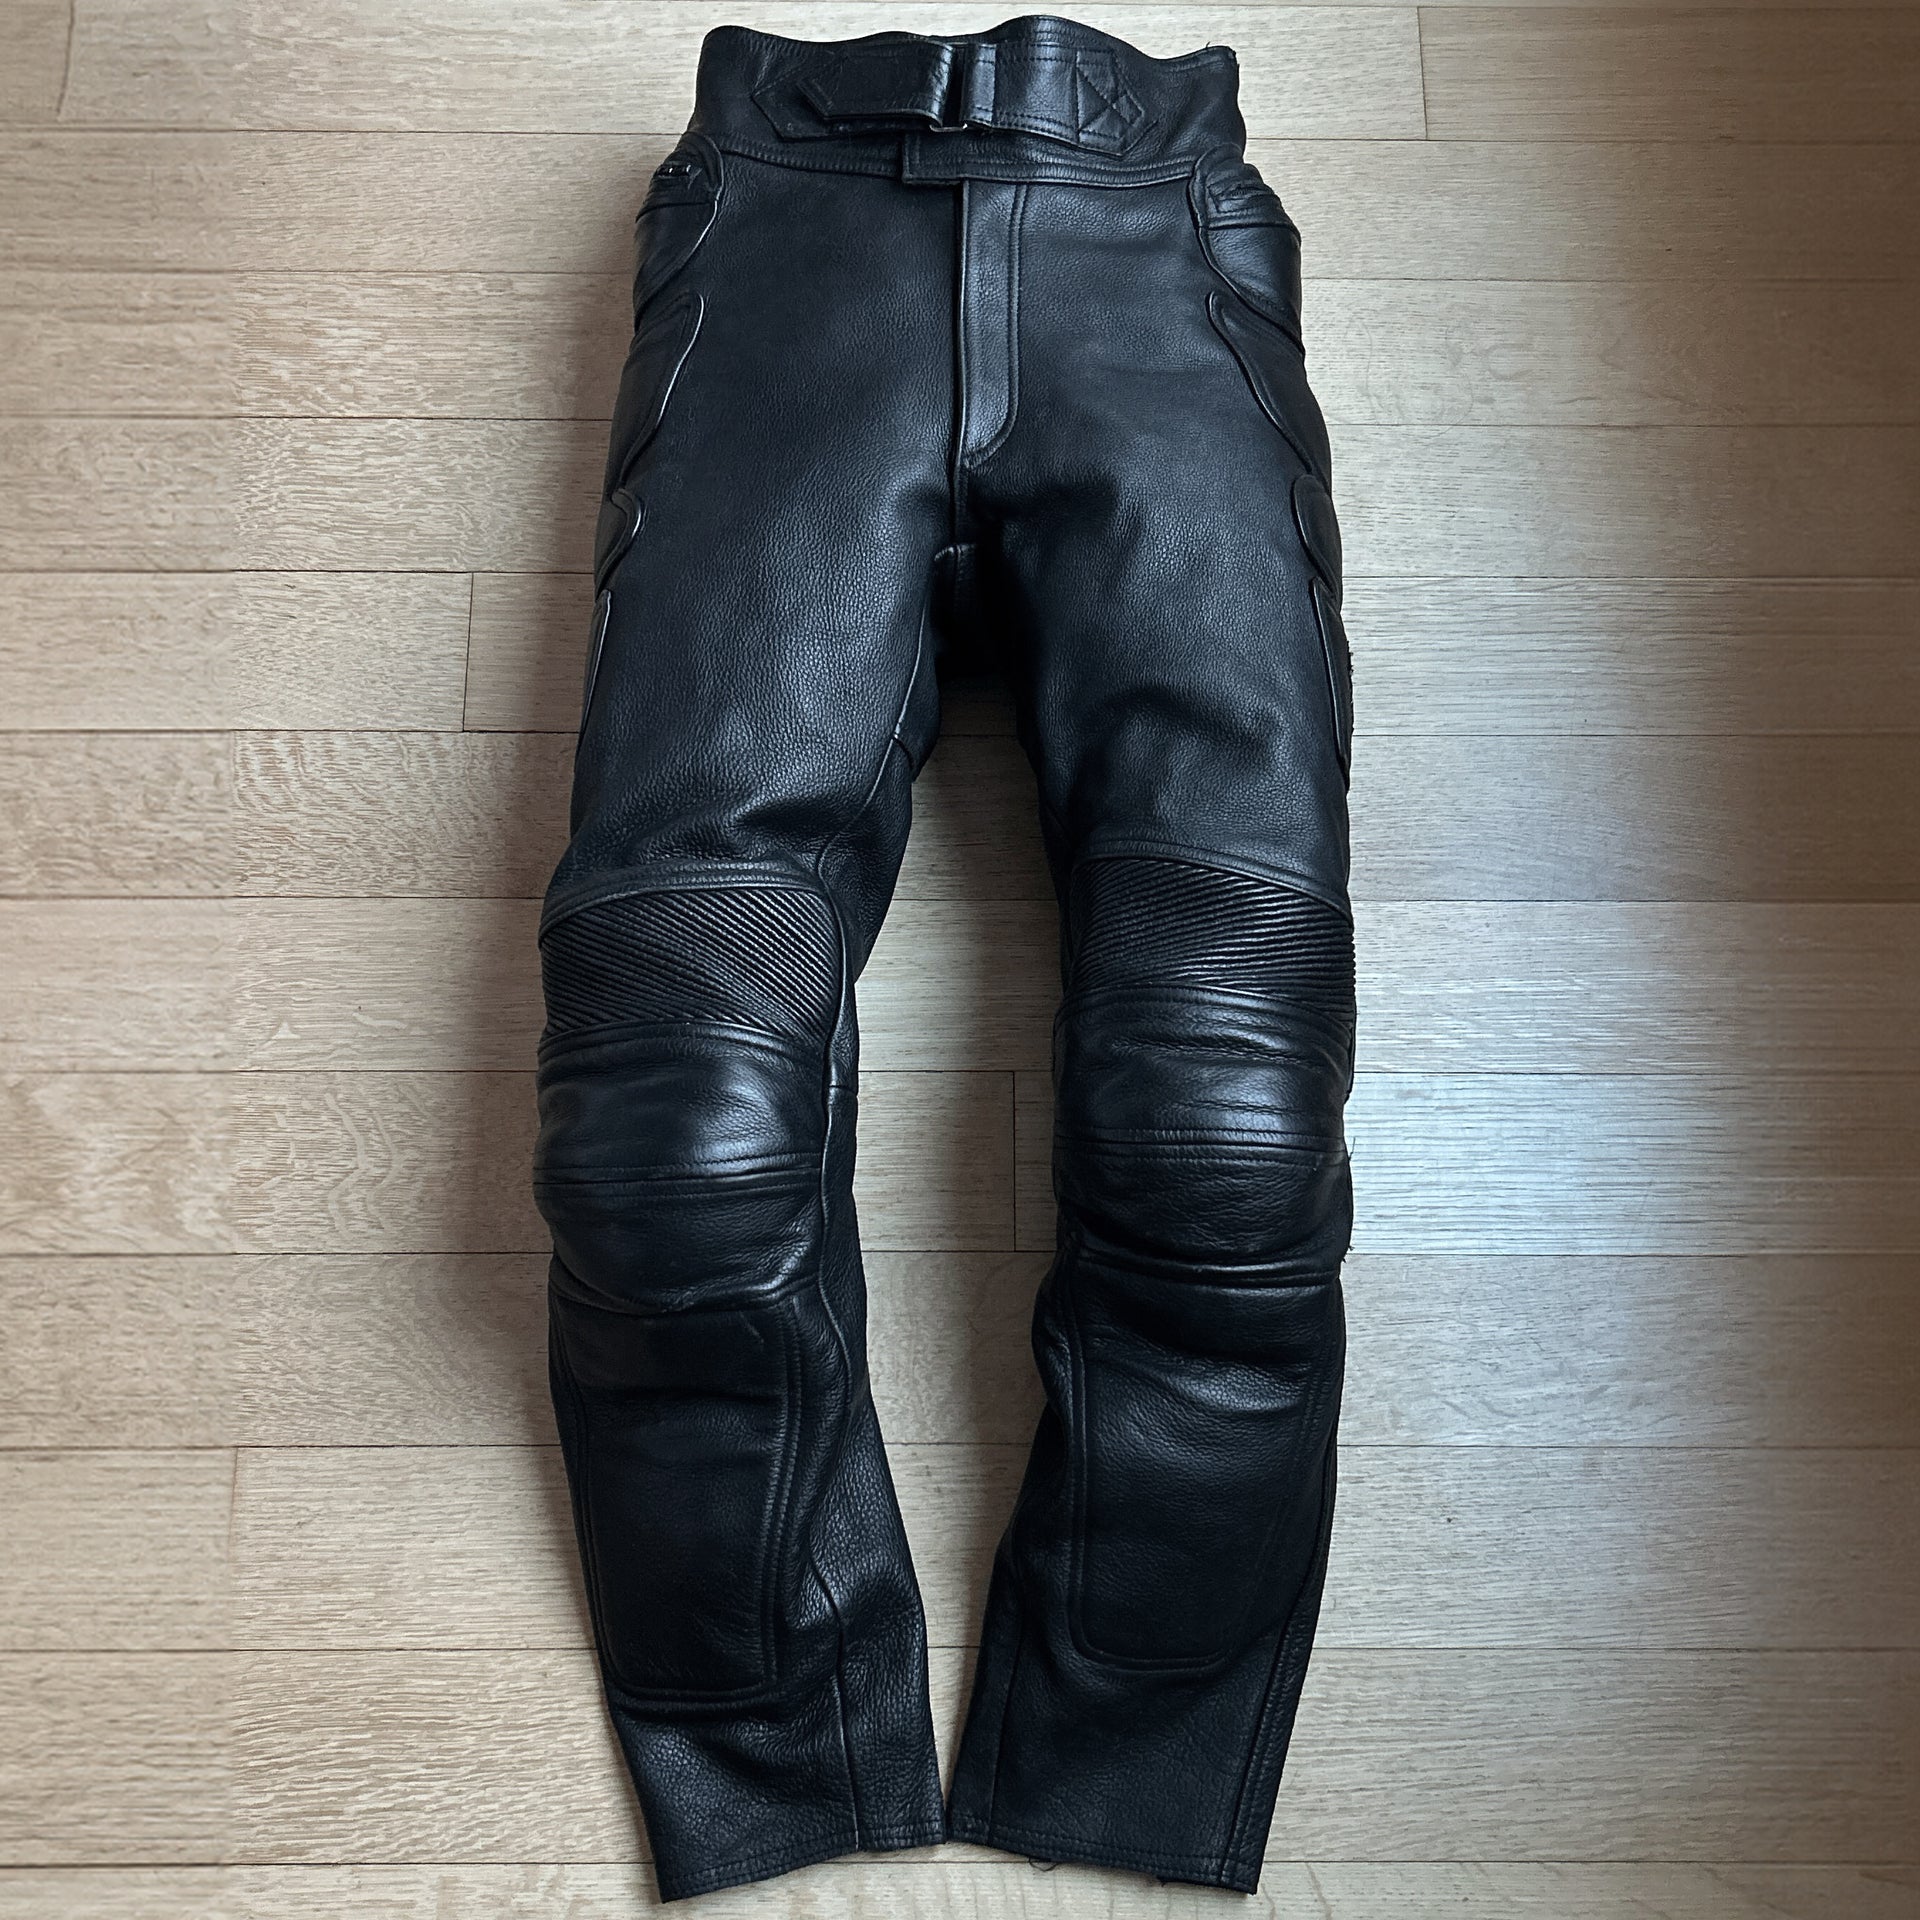 00s Kadoya 'Armoured' Black Leather Motorcycle Pants